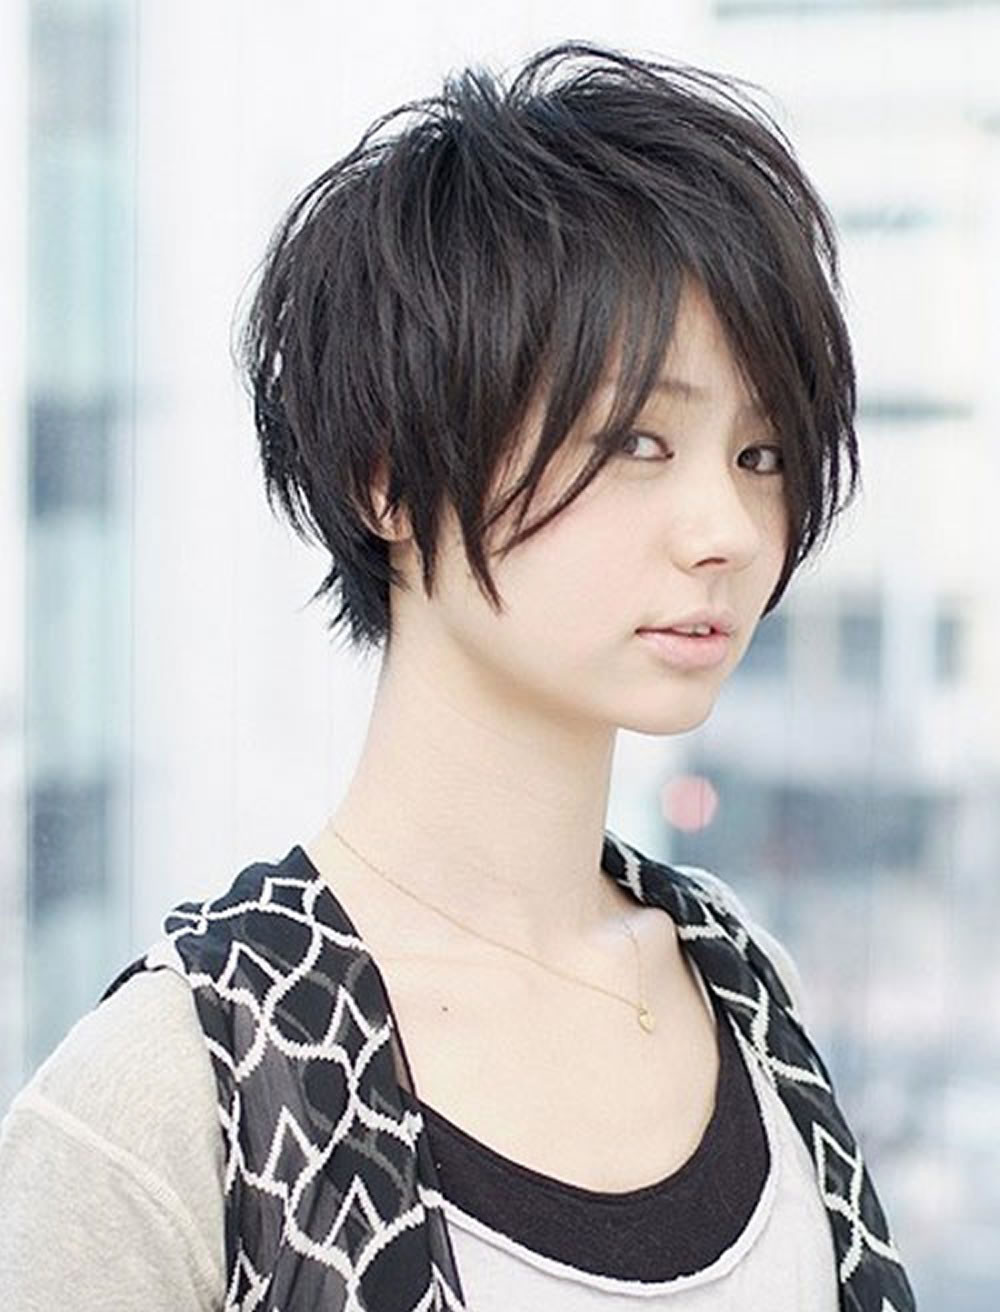 https://www.sensod.com/images/media/s/16/short-hairstyles-for-asian-women-1-2018081607021177_large.jpg